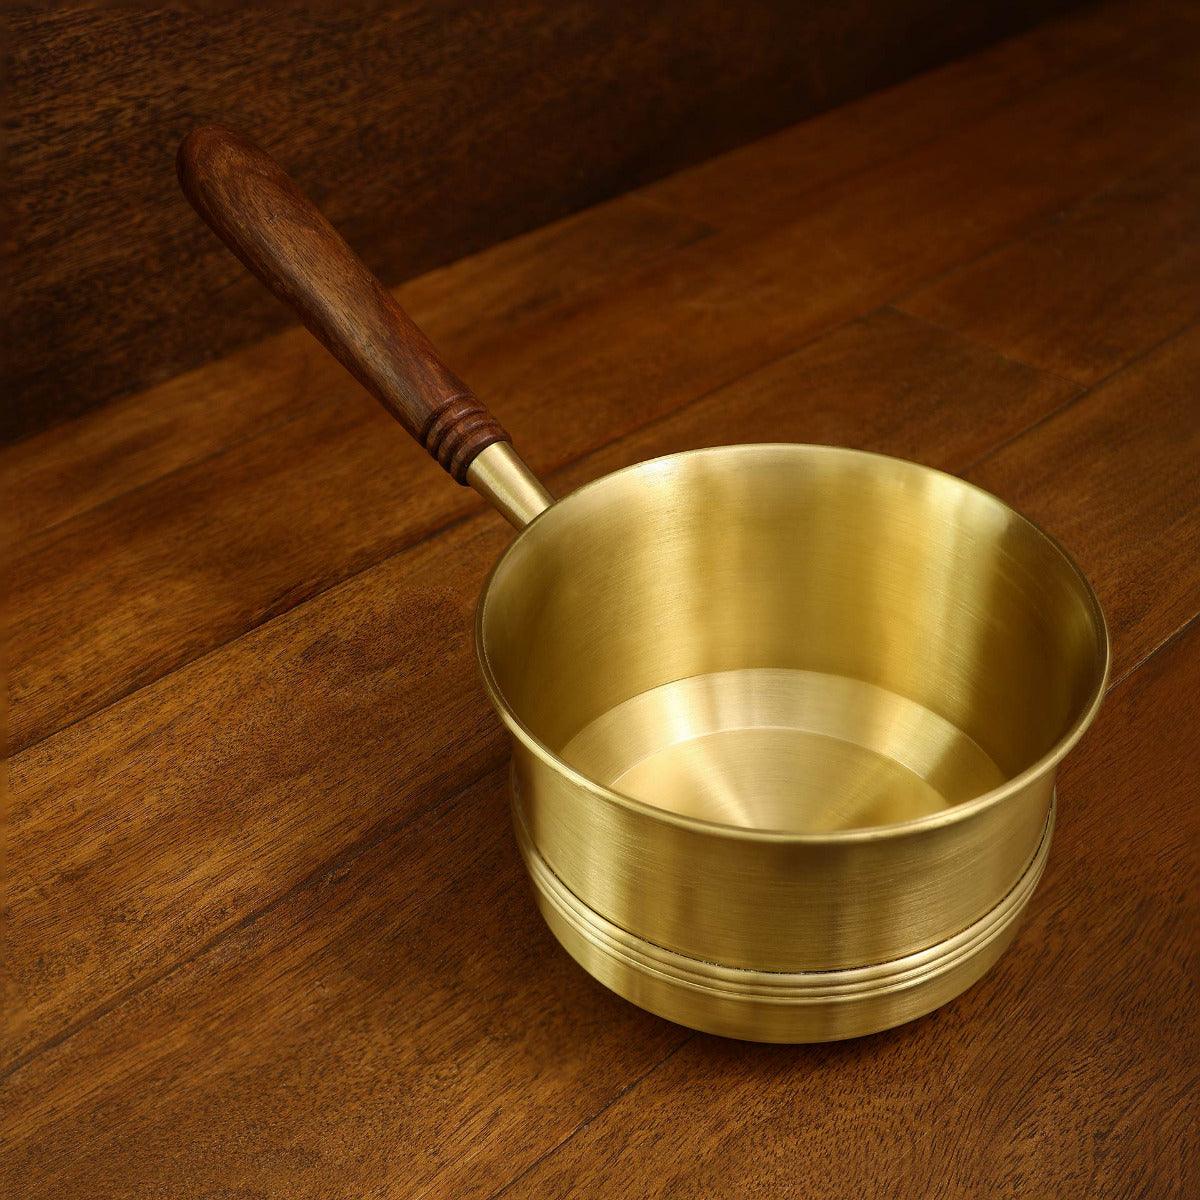 Arra brass tea pan with wooden handle